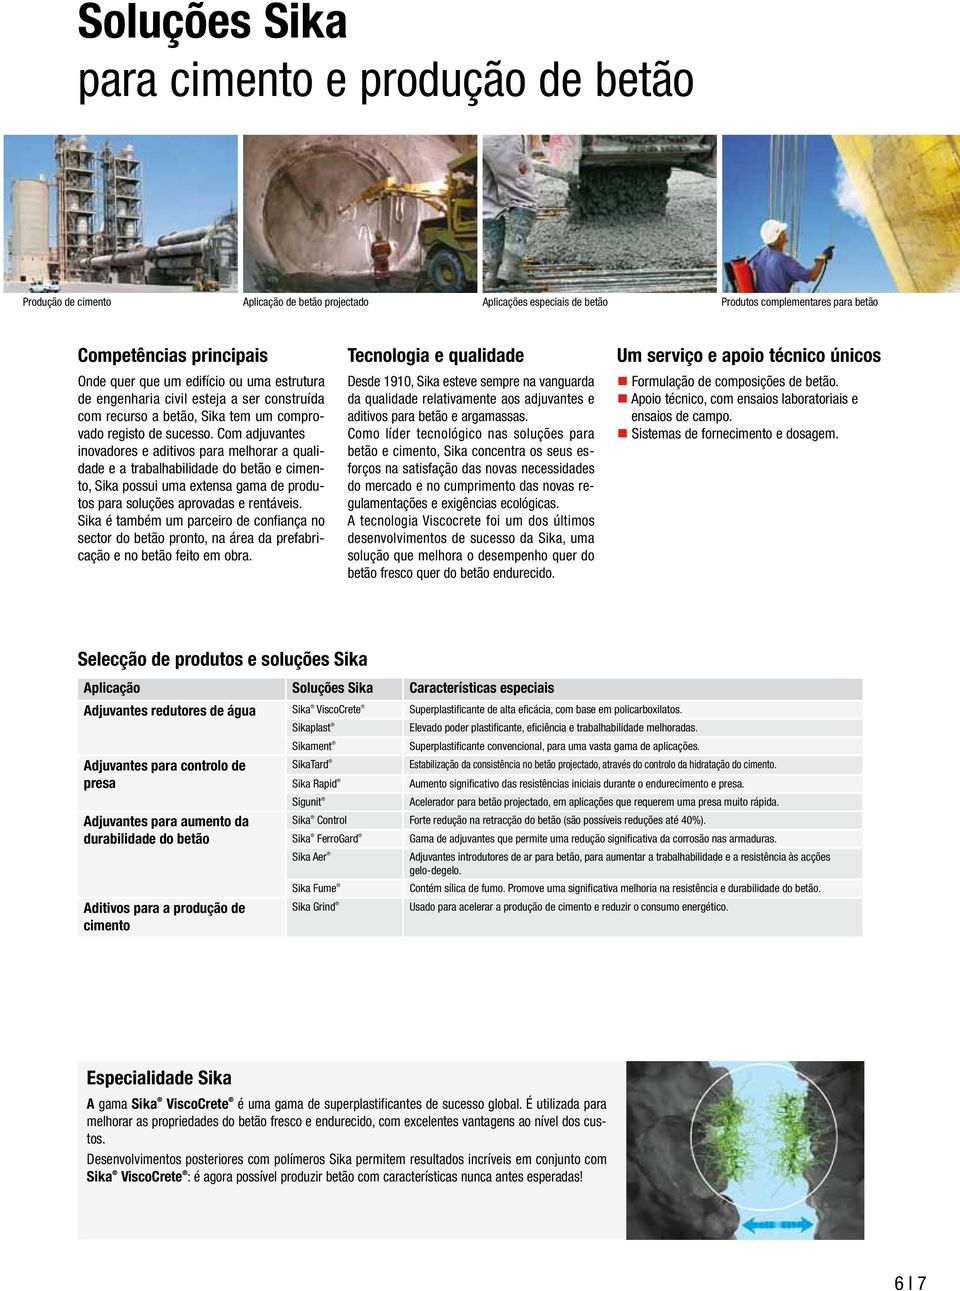 Com adjuvantes inovadores e aditivos para melhorar a qualidade e a trabalhabilidade do betão e cimento, Sika possui uma extensa gama de produtos para soluções aprovadas e rentáveis.